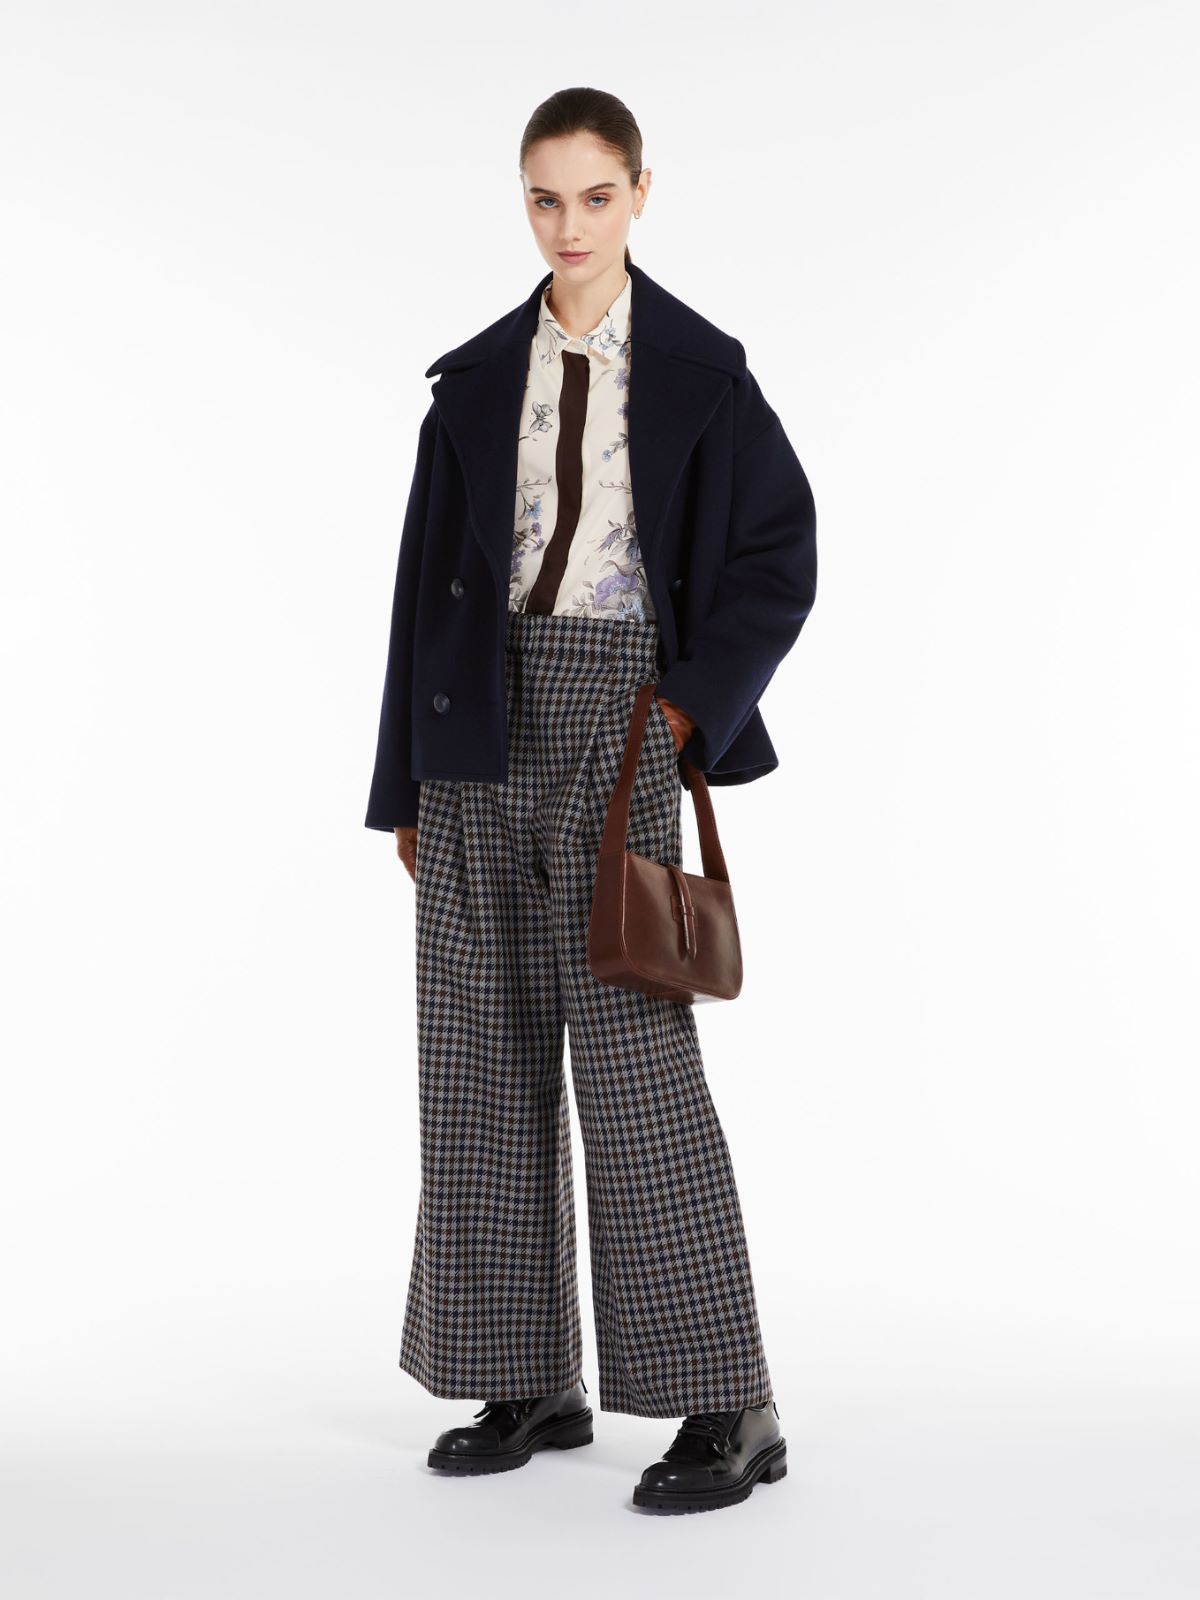 Pantaloni in stuoia di lana e cotone - BLU MARINO - Weekend Max Mara